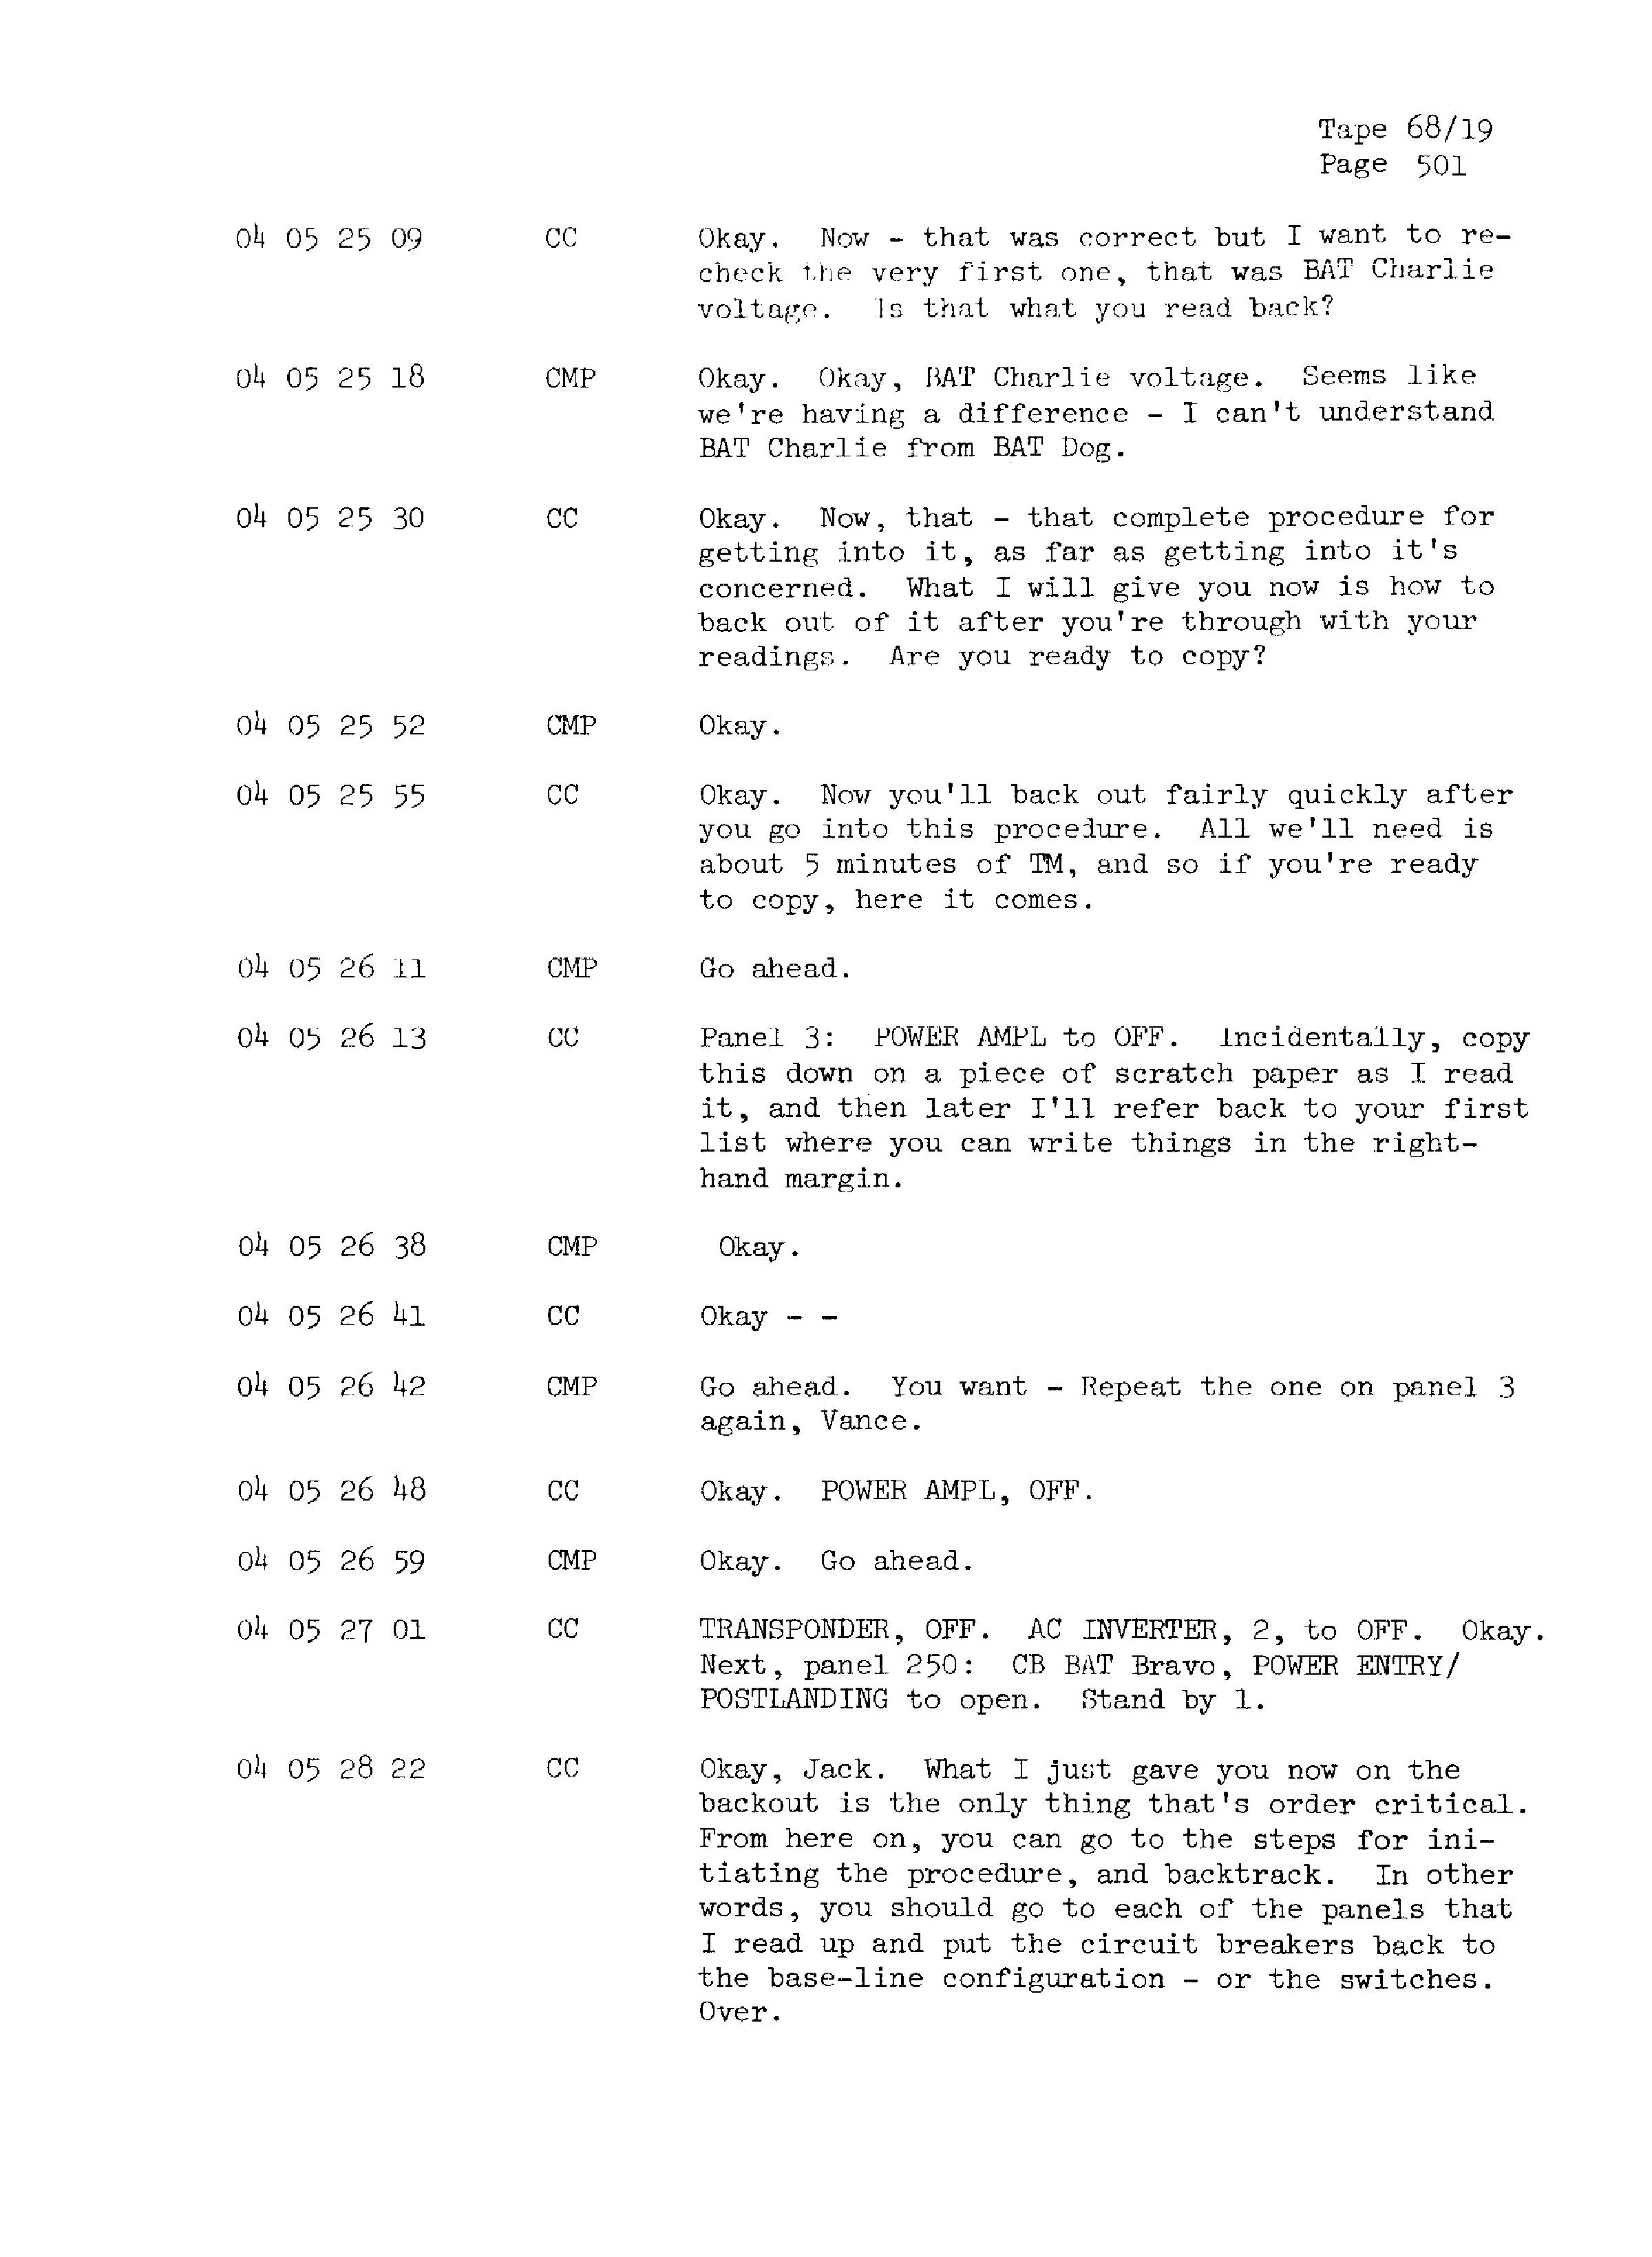 Page 508 of Apollo 13’s original transcript